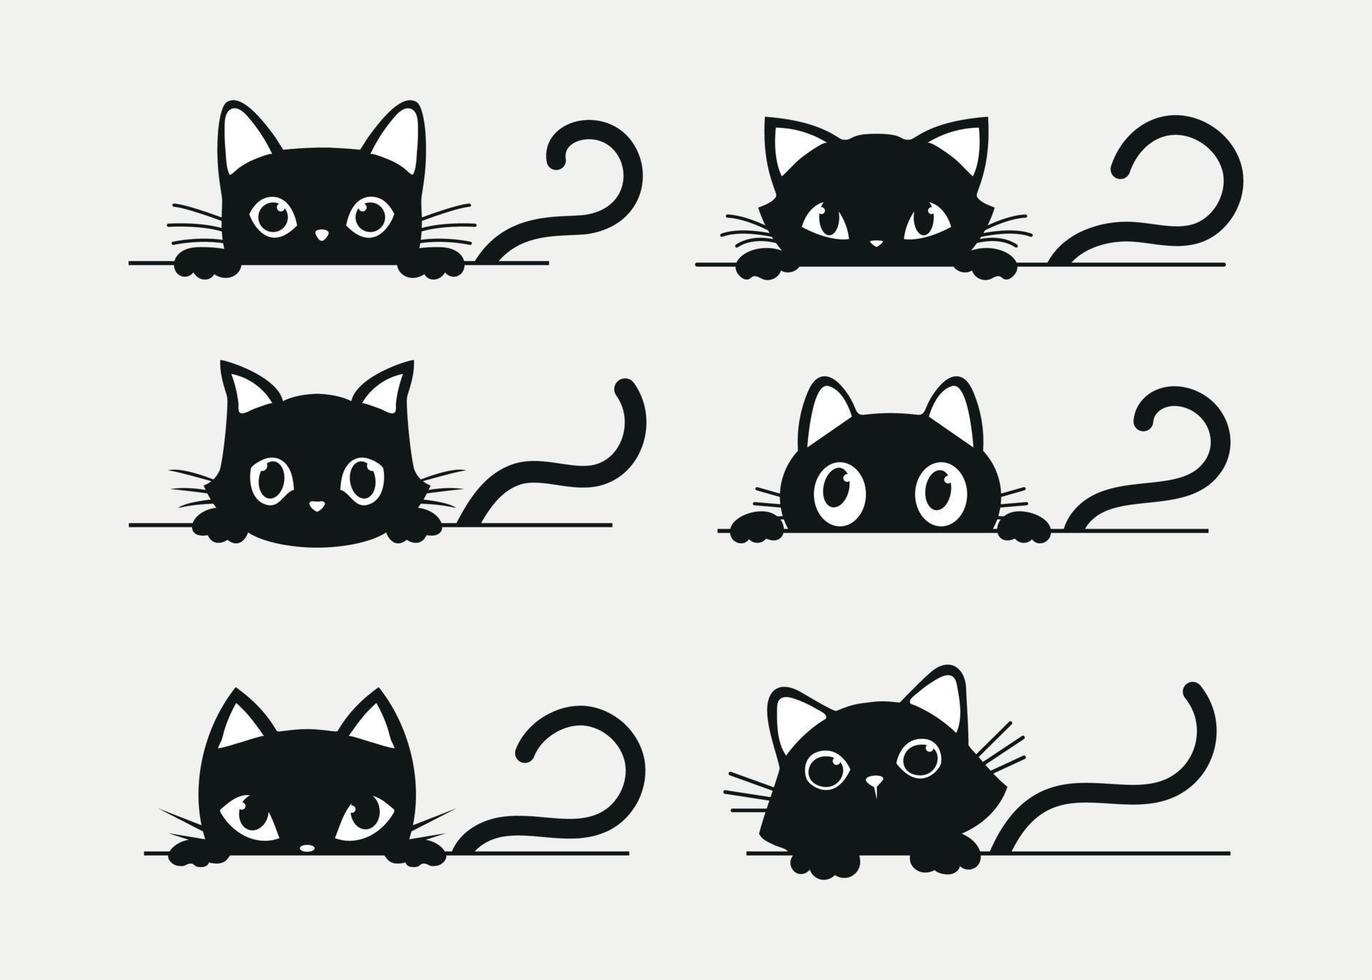 Gatos pretos definem ilustração simples e misteriosa de desenho